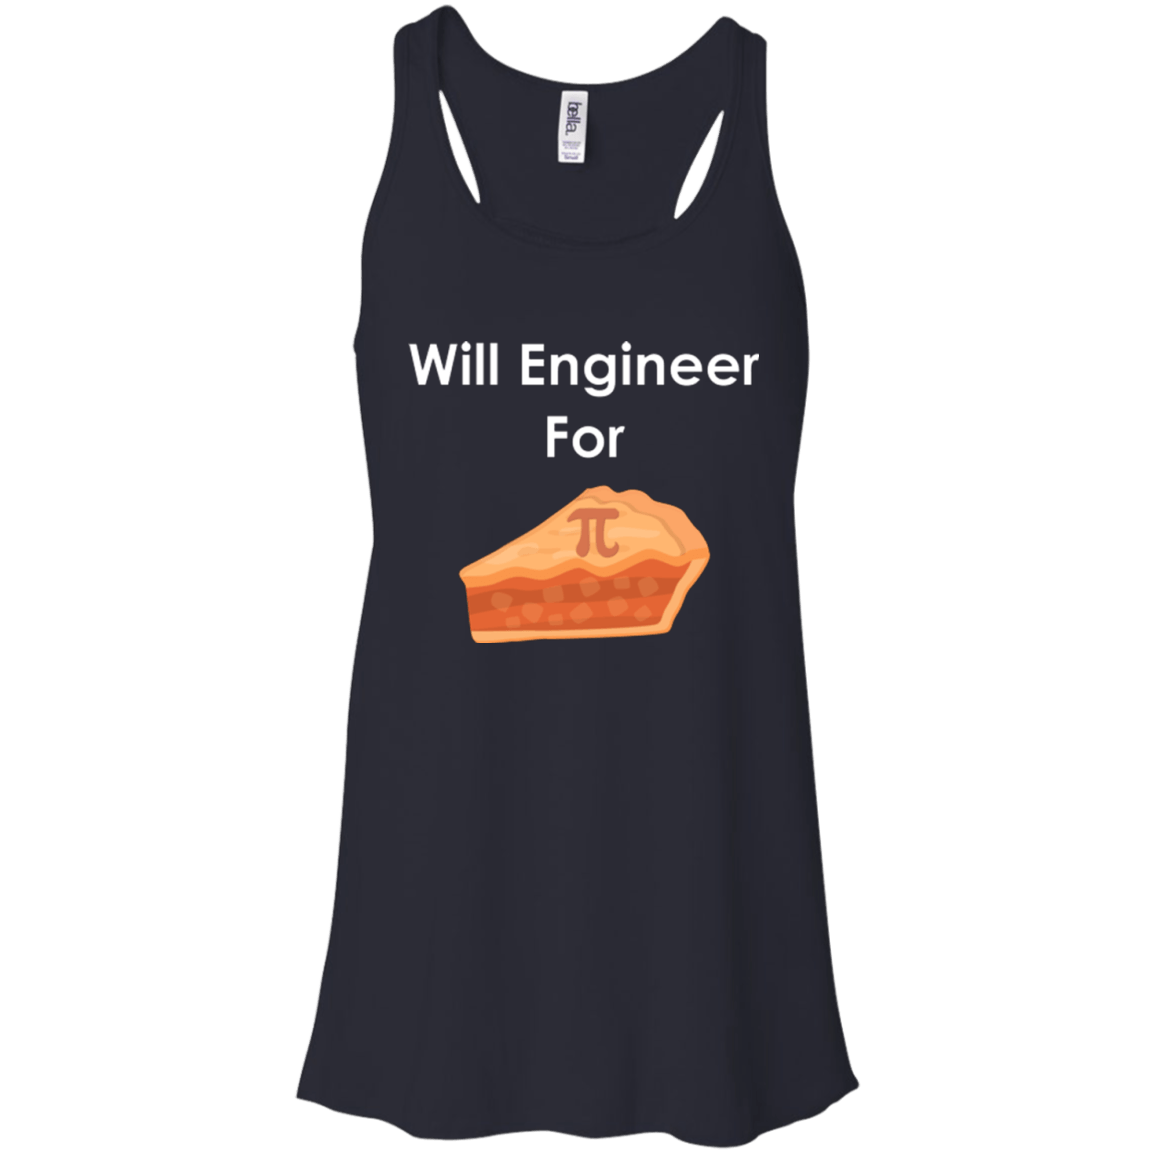 Will ingeniero para Pi